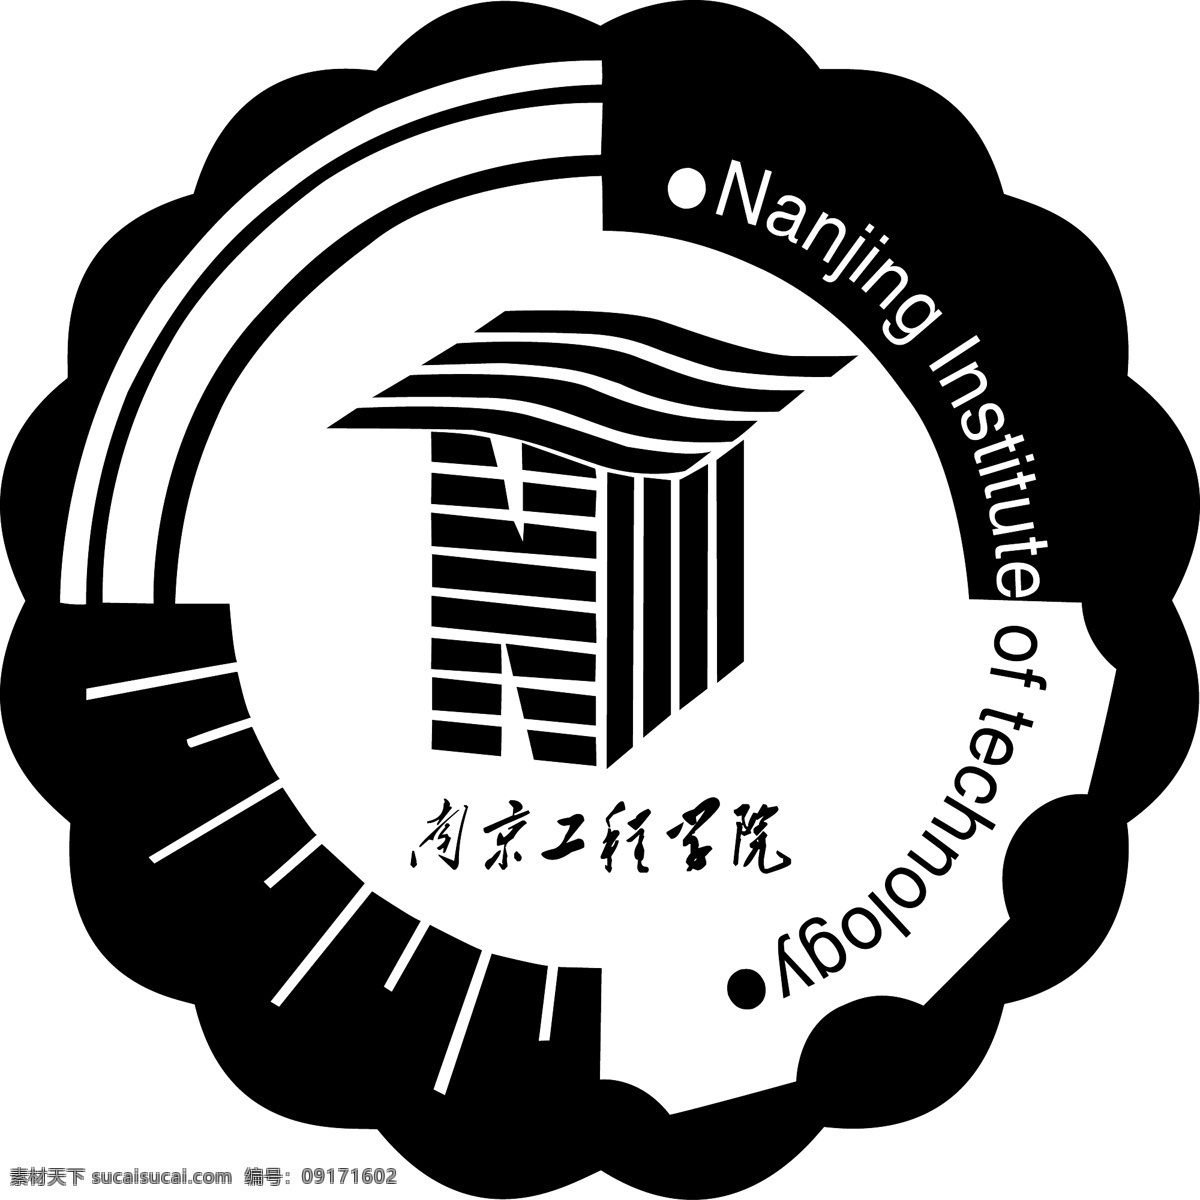 工程学院 标 标志 标识标志图标 公共标识标志 南京 矢量图库